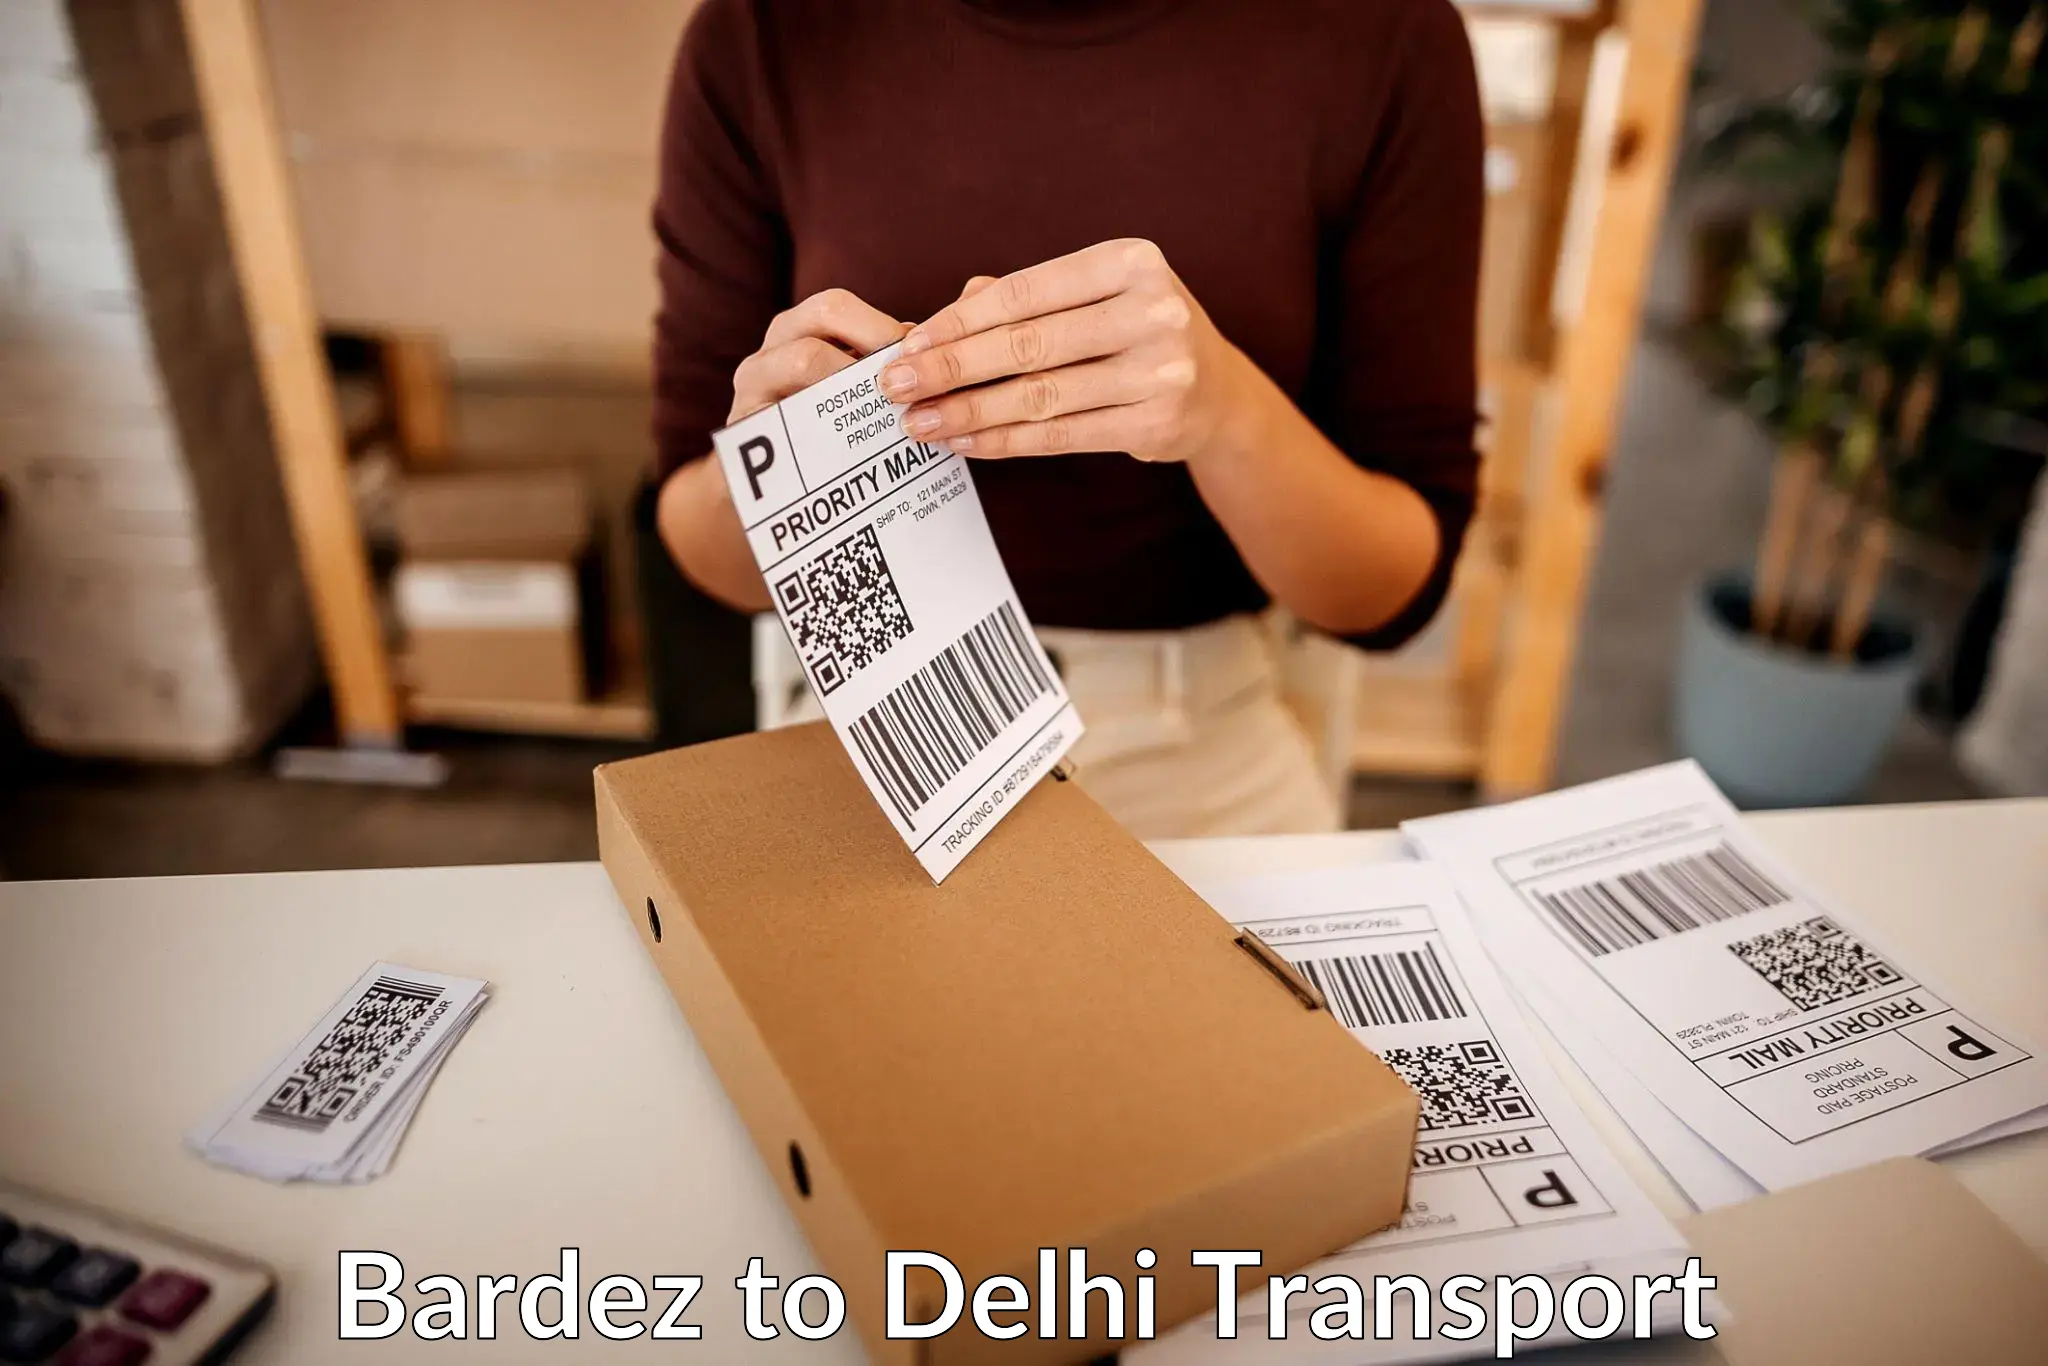 Furniture transport service Bardez to Kalkaji